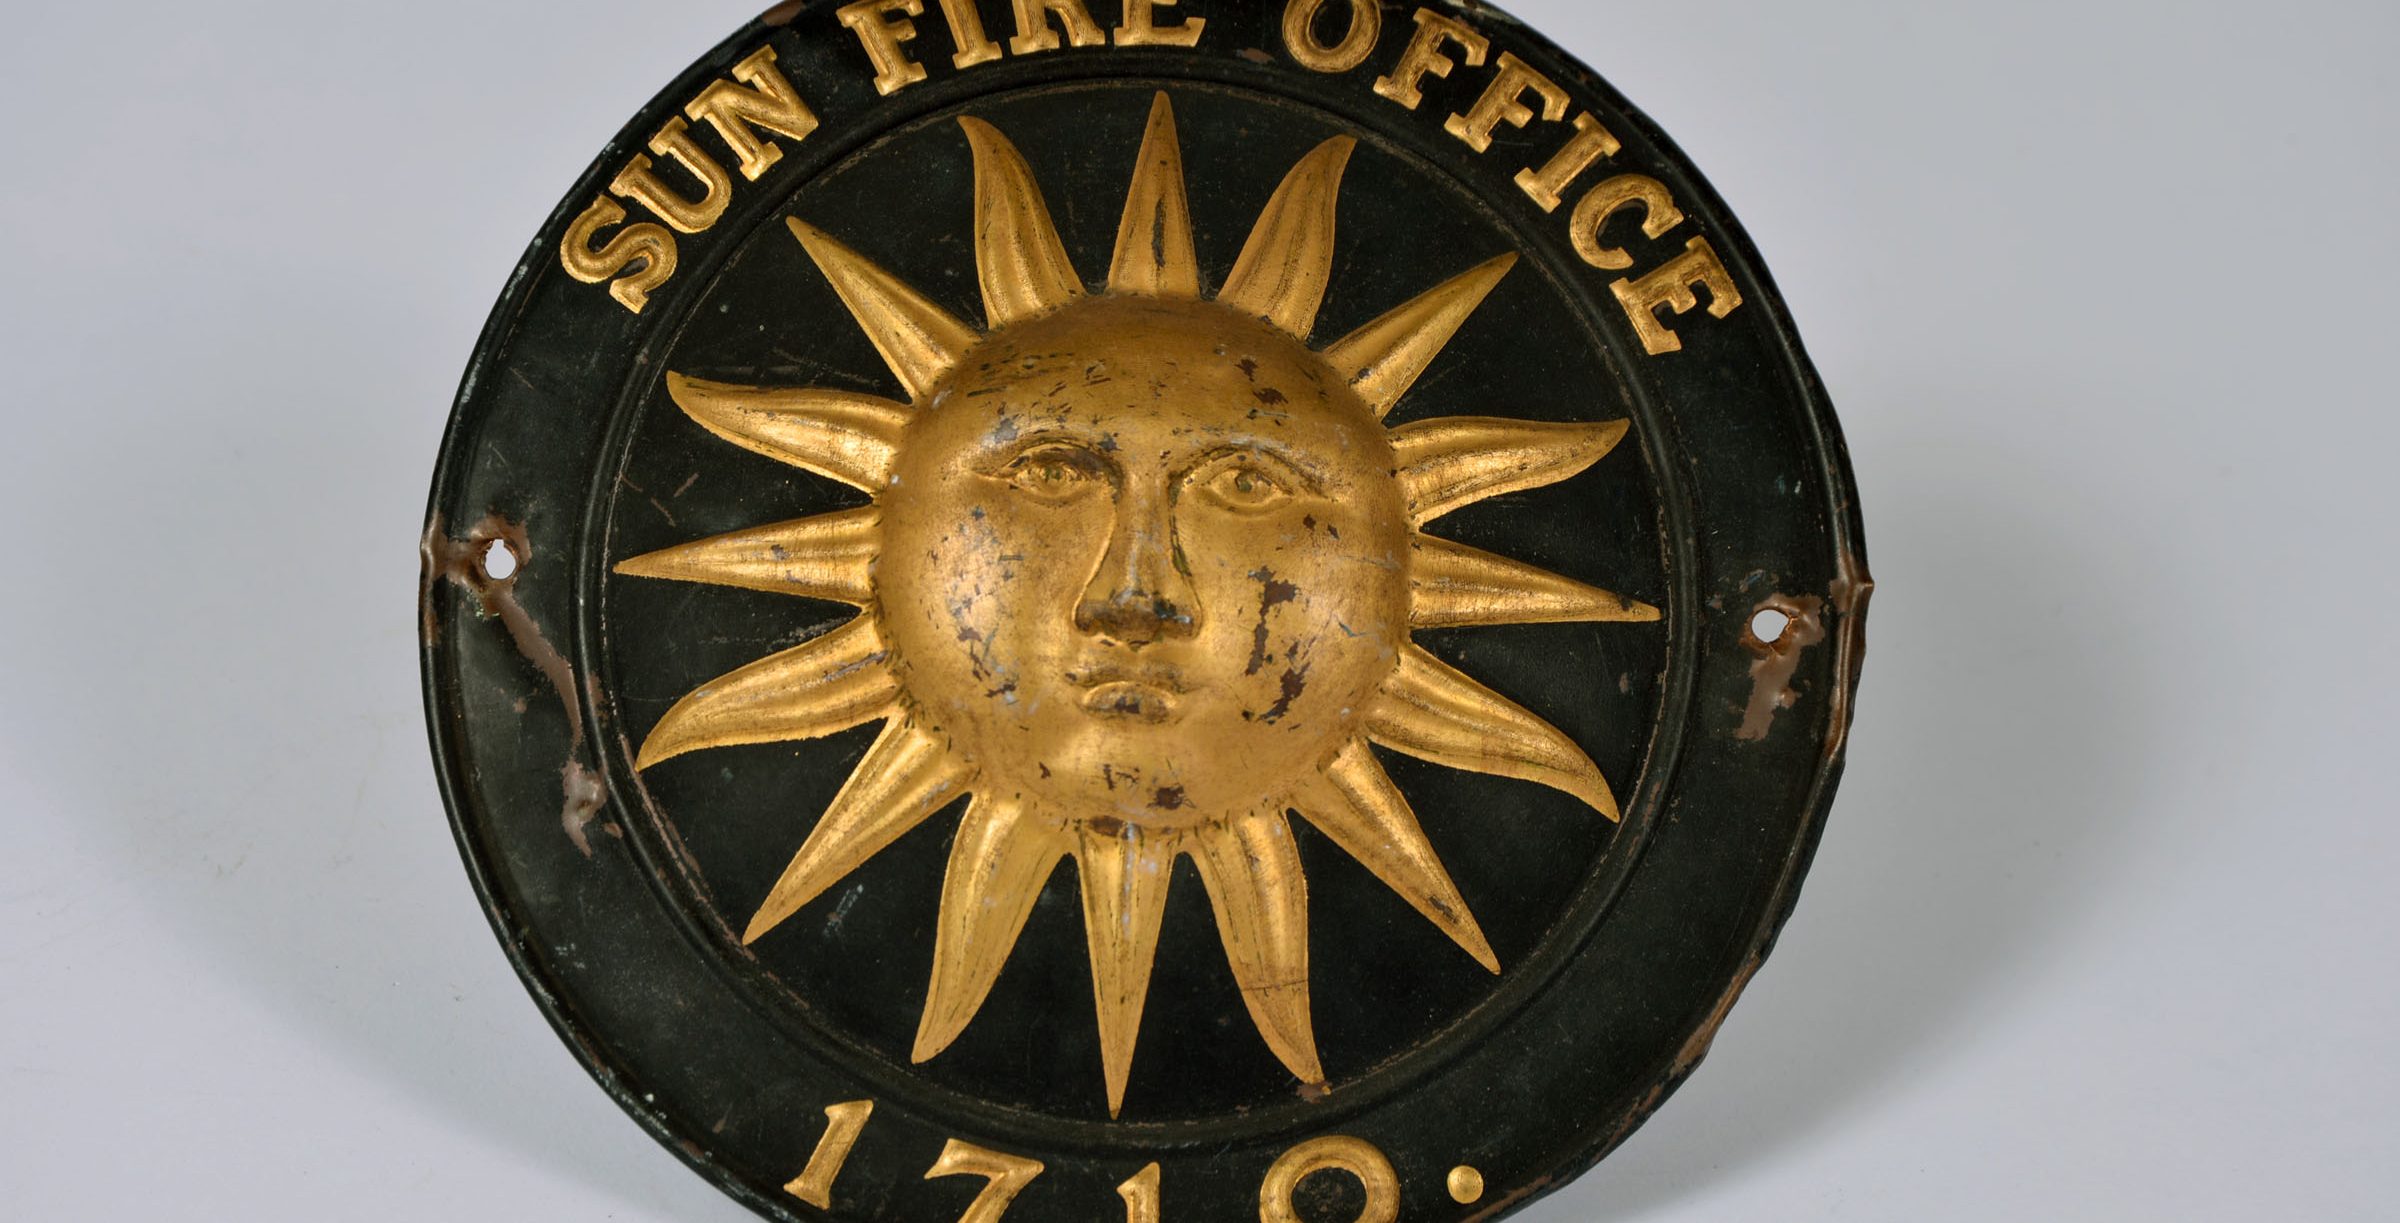 MH Museum Case11 Sun Fire Office 1710 Plaque Aspect Ratio 785 400